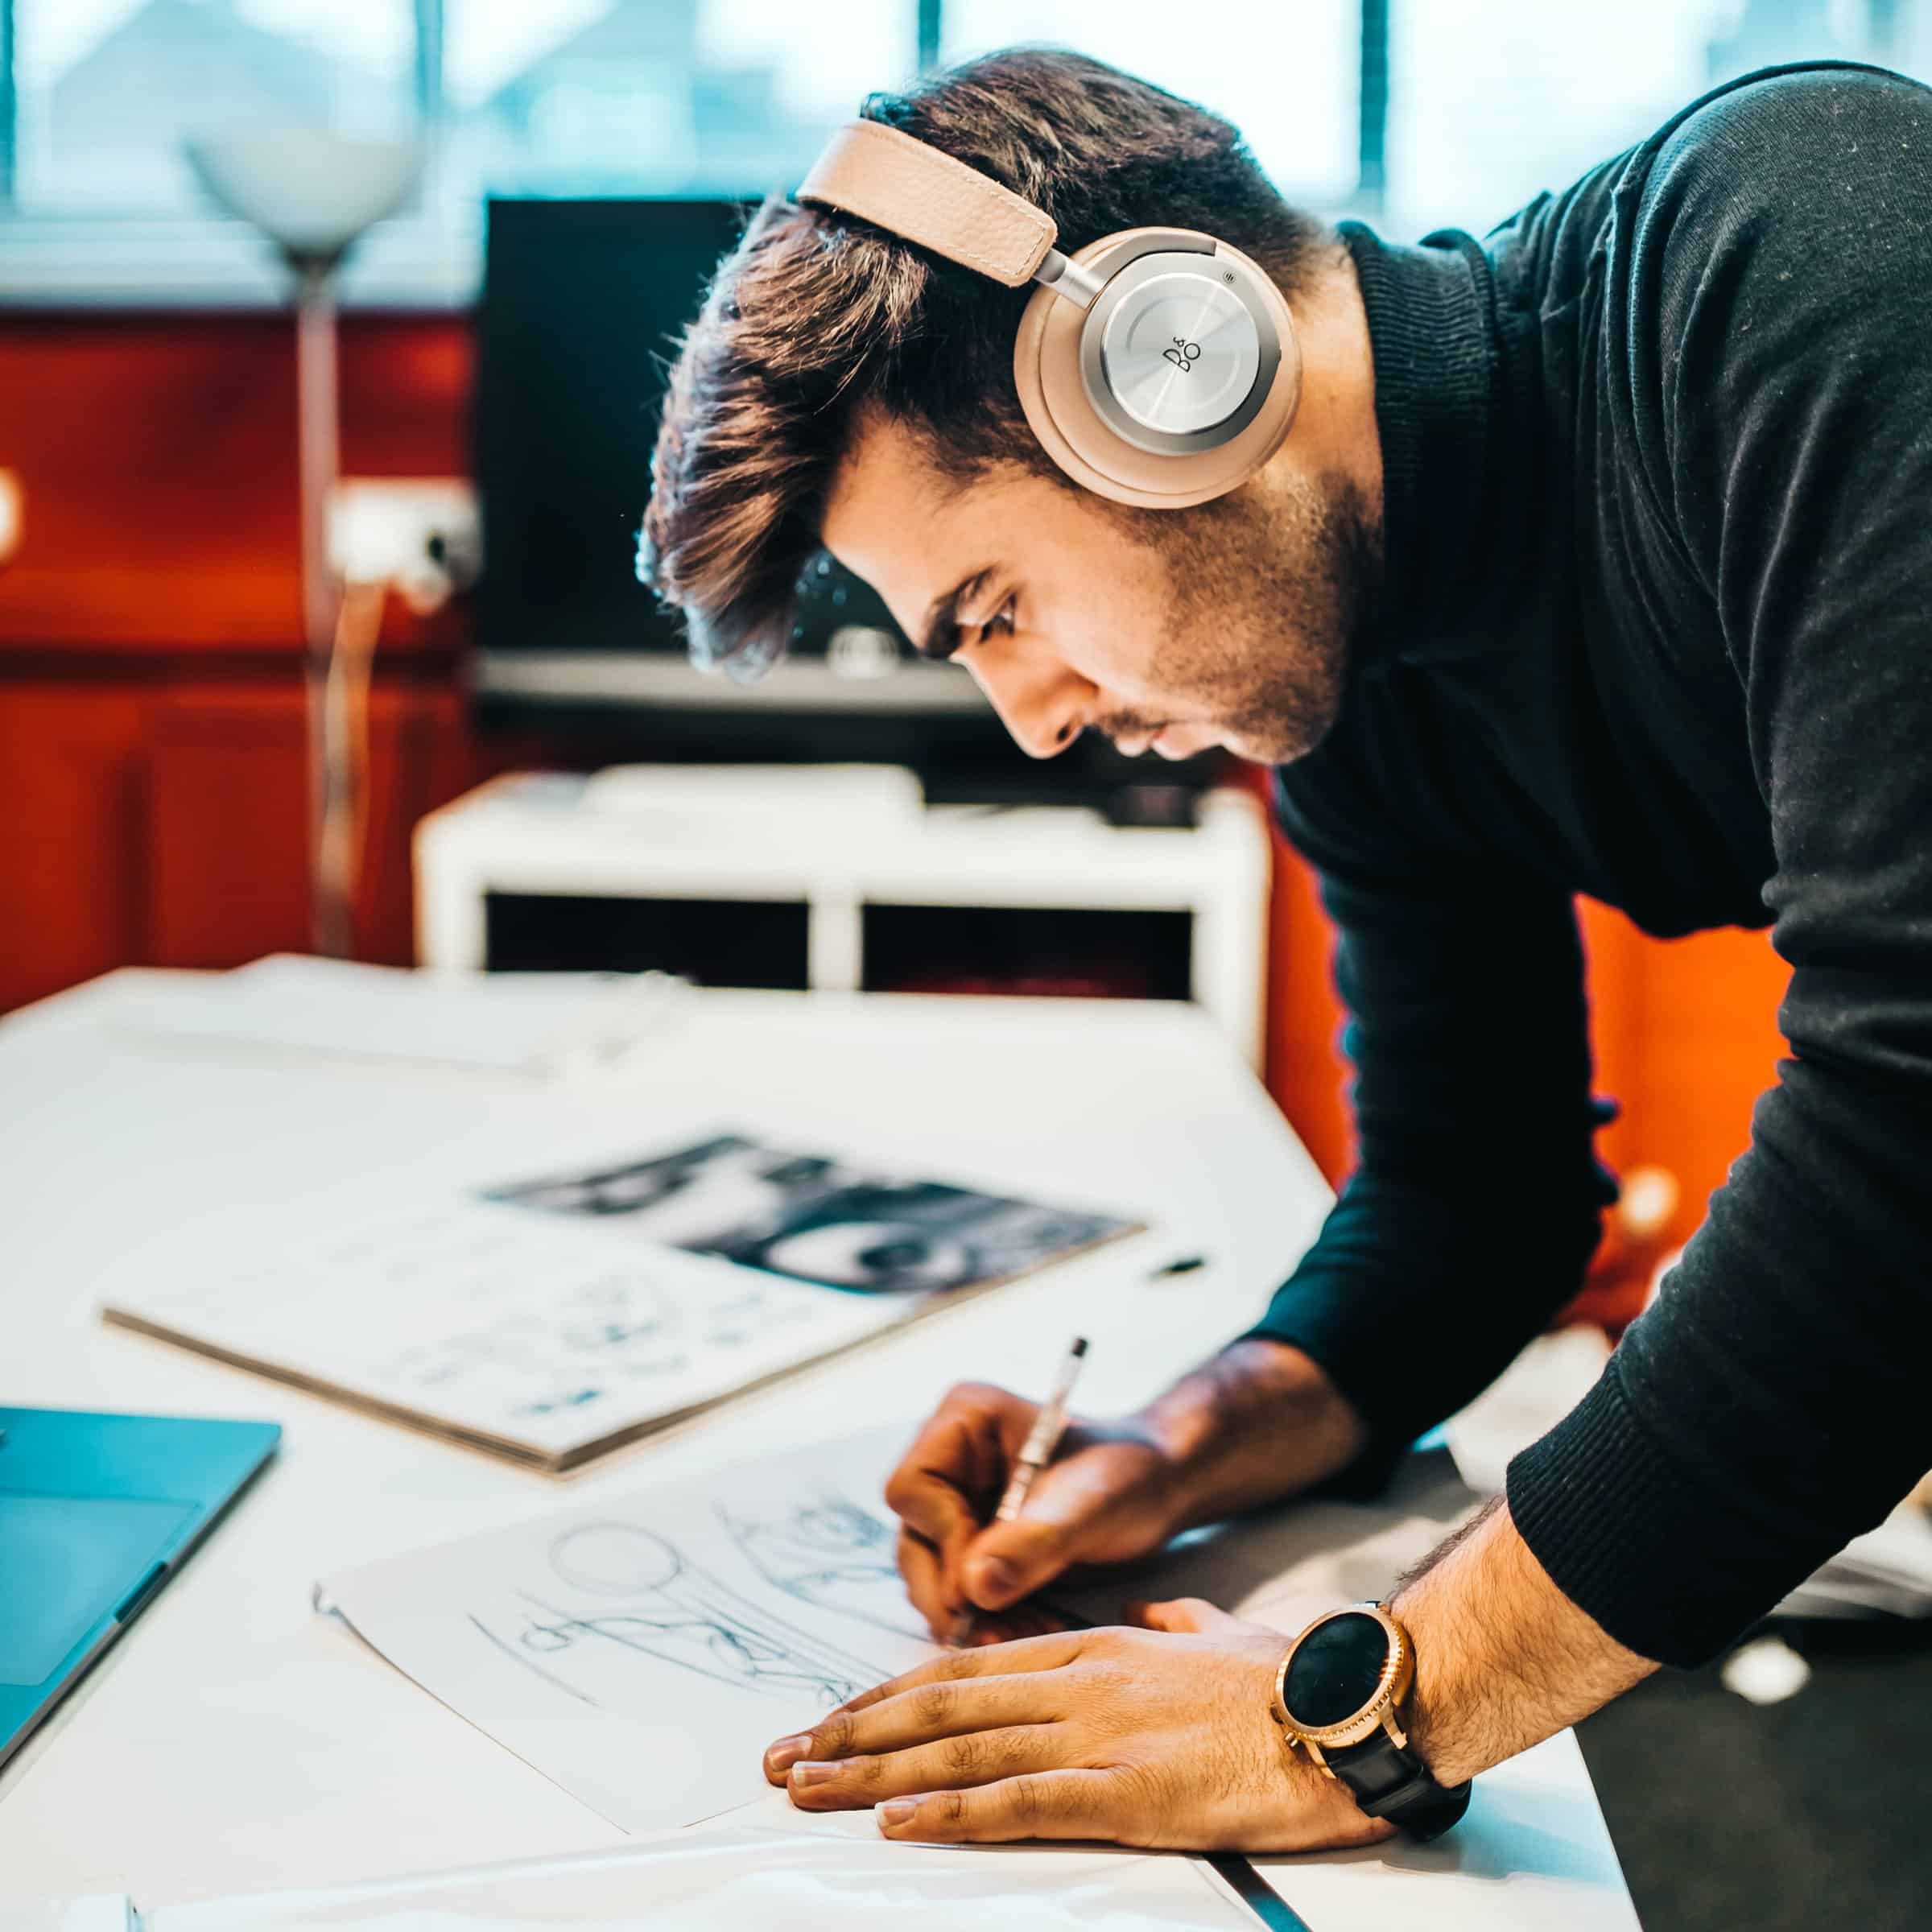 Man wearing headphones. Leaning over desk, sketching.